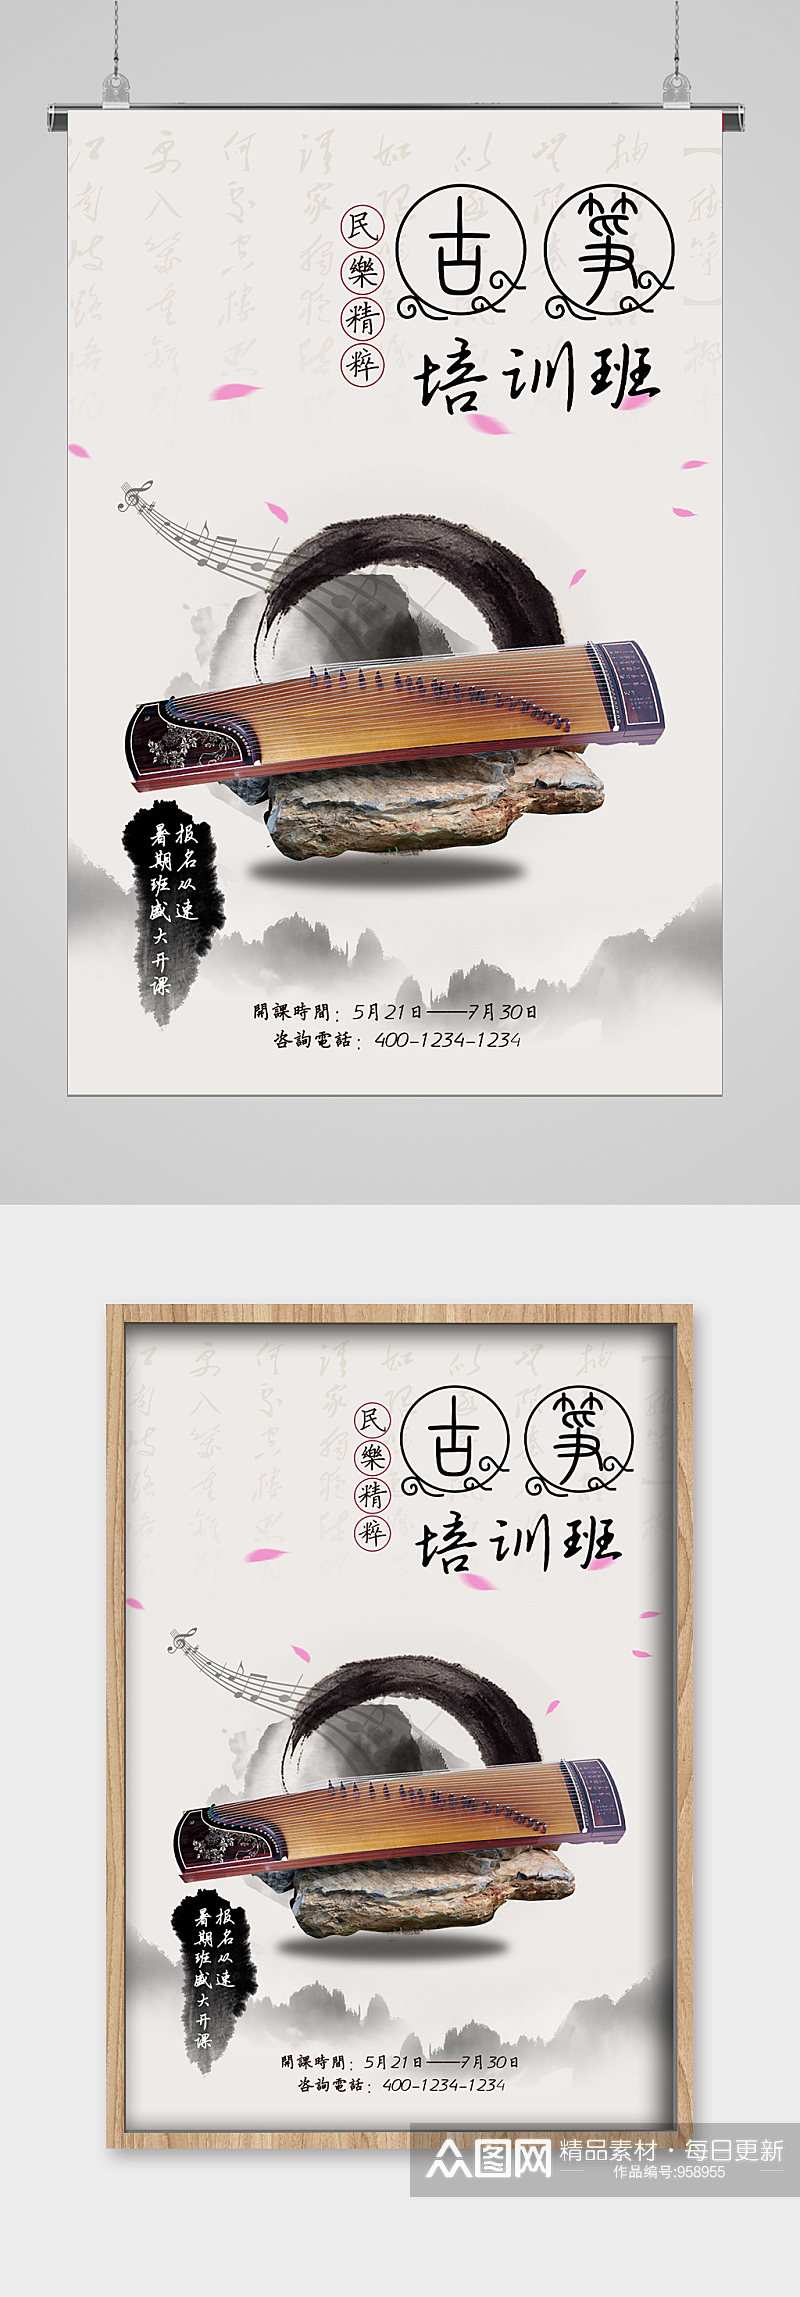 中国风古筝培训班文化宣传海报素材